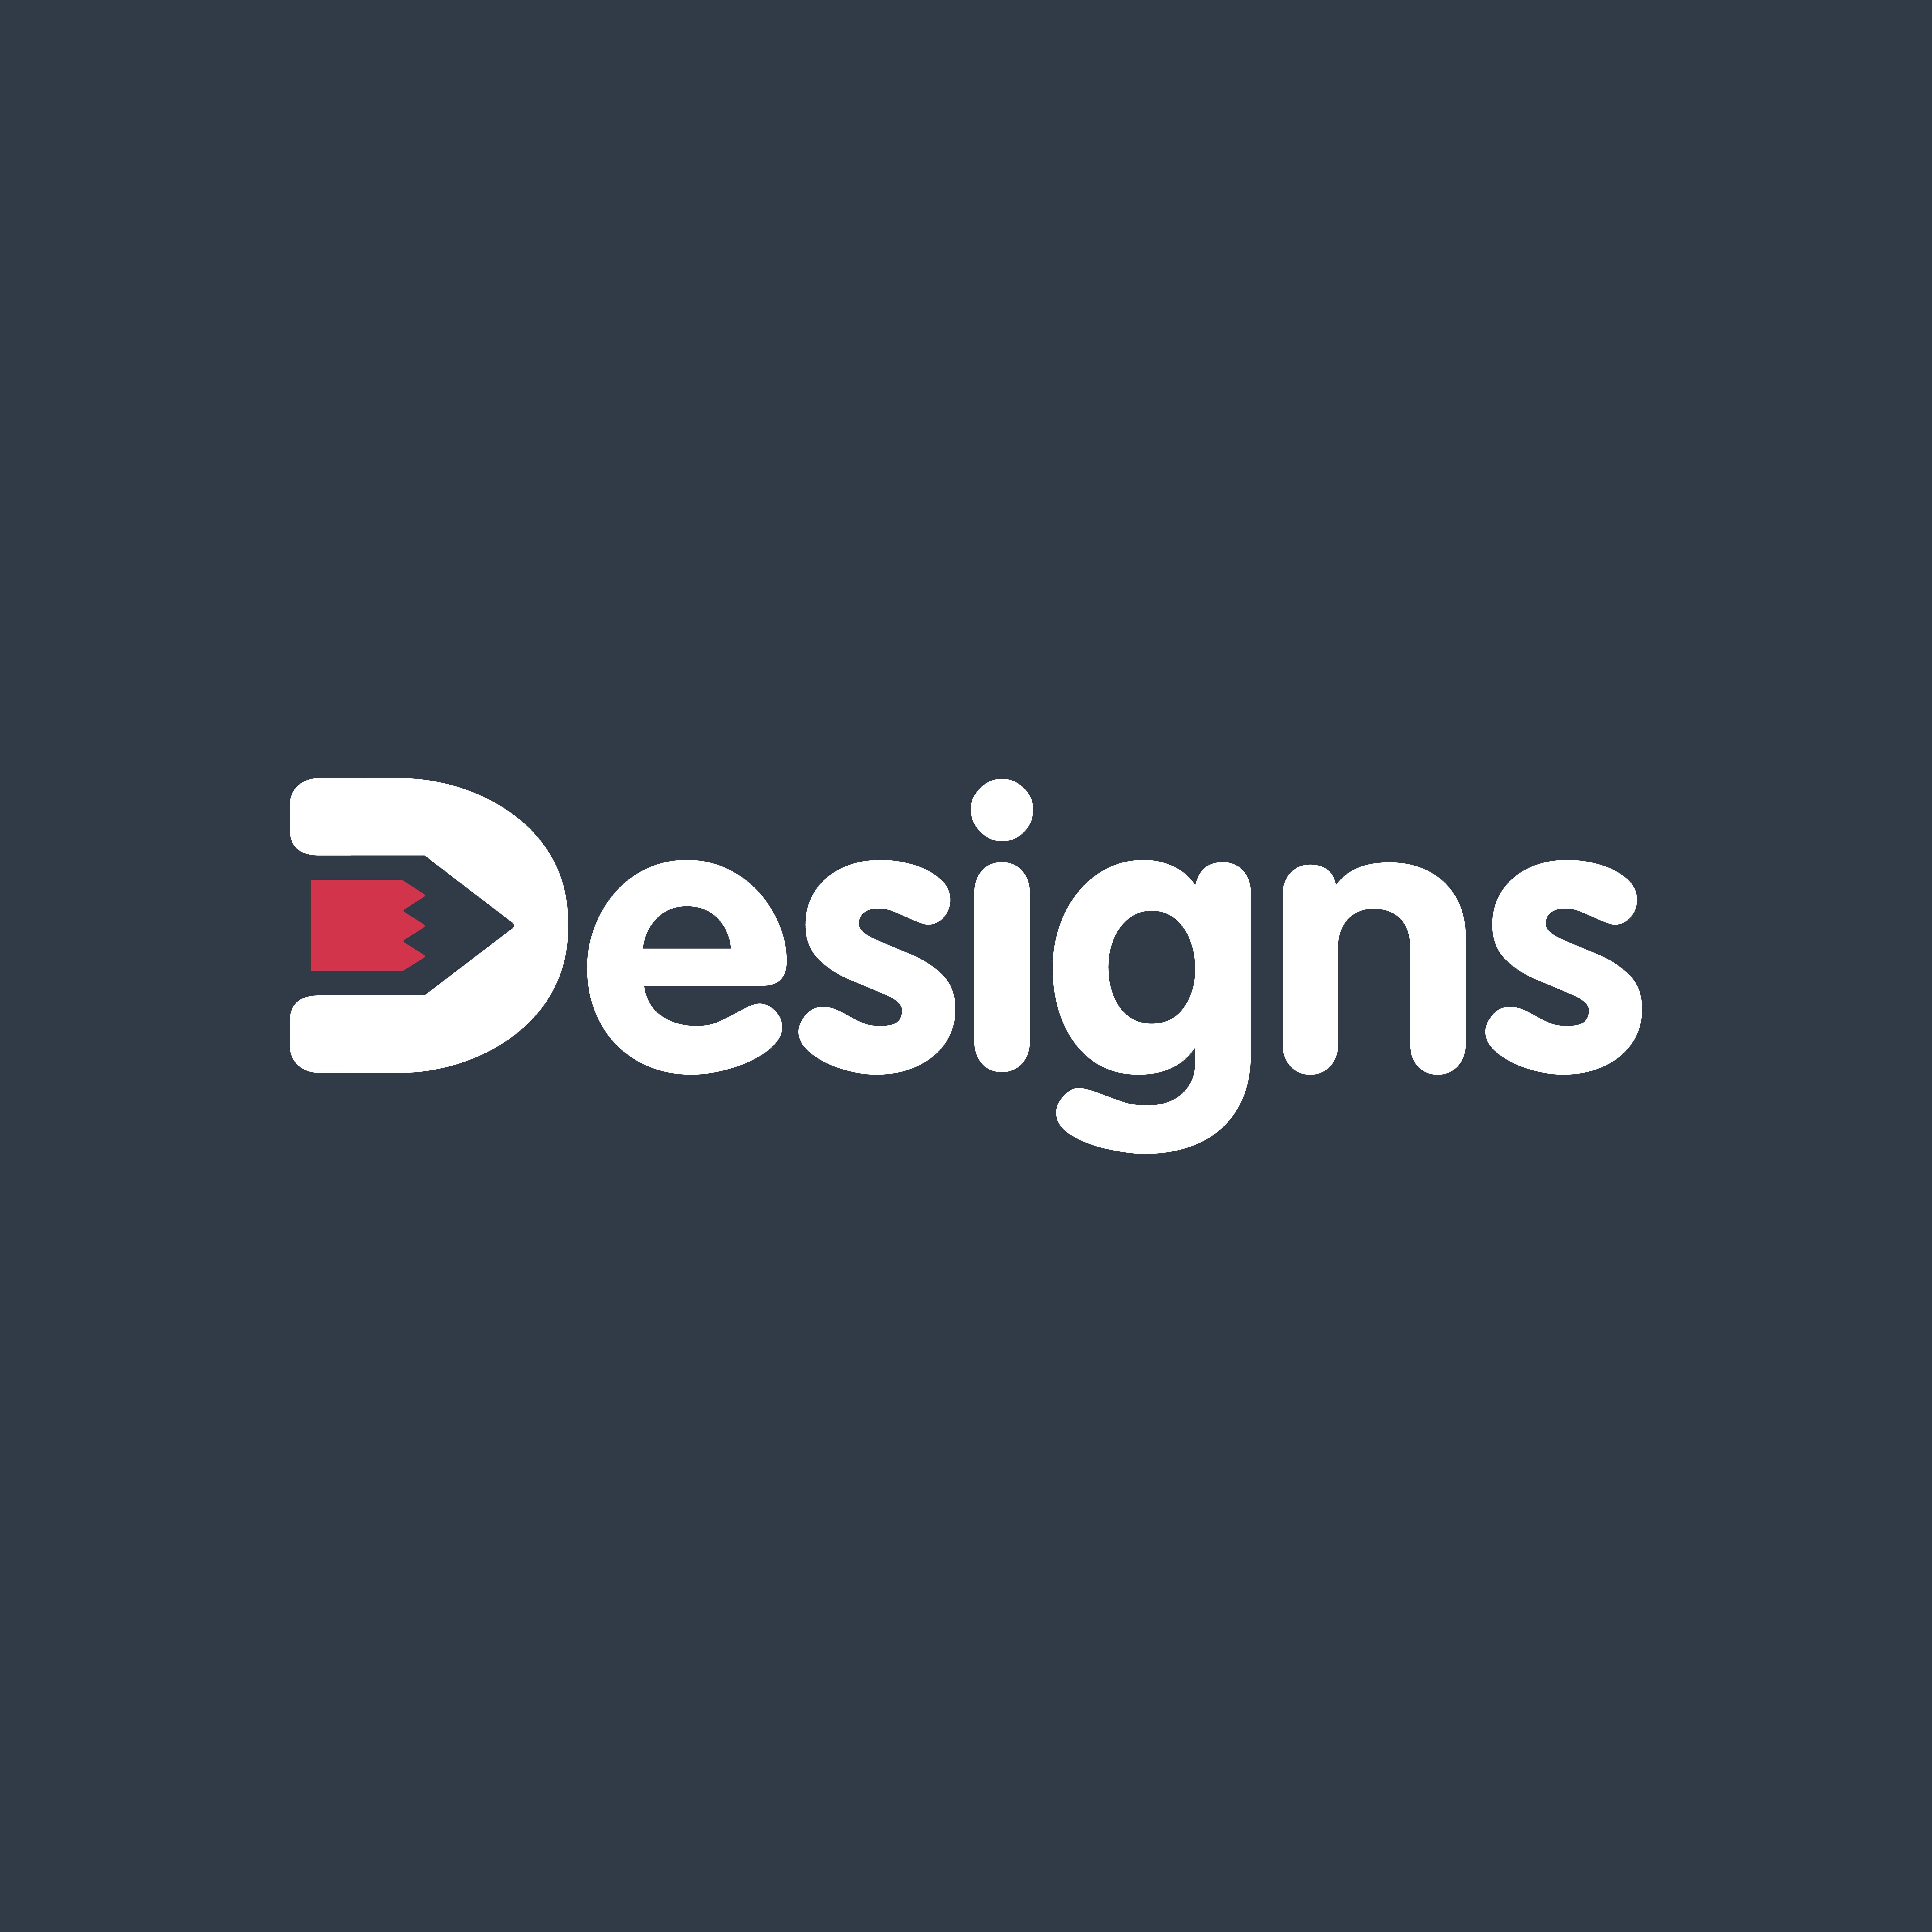 Cool Letter V Logo - V Logo Design Ideas New 30 Cool Letter V Logo Design Inspiration ...